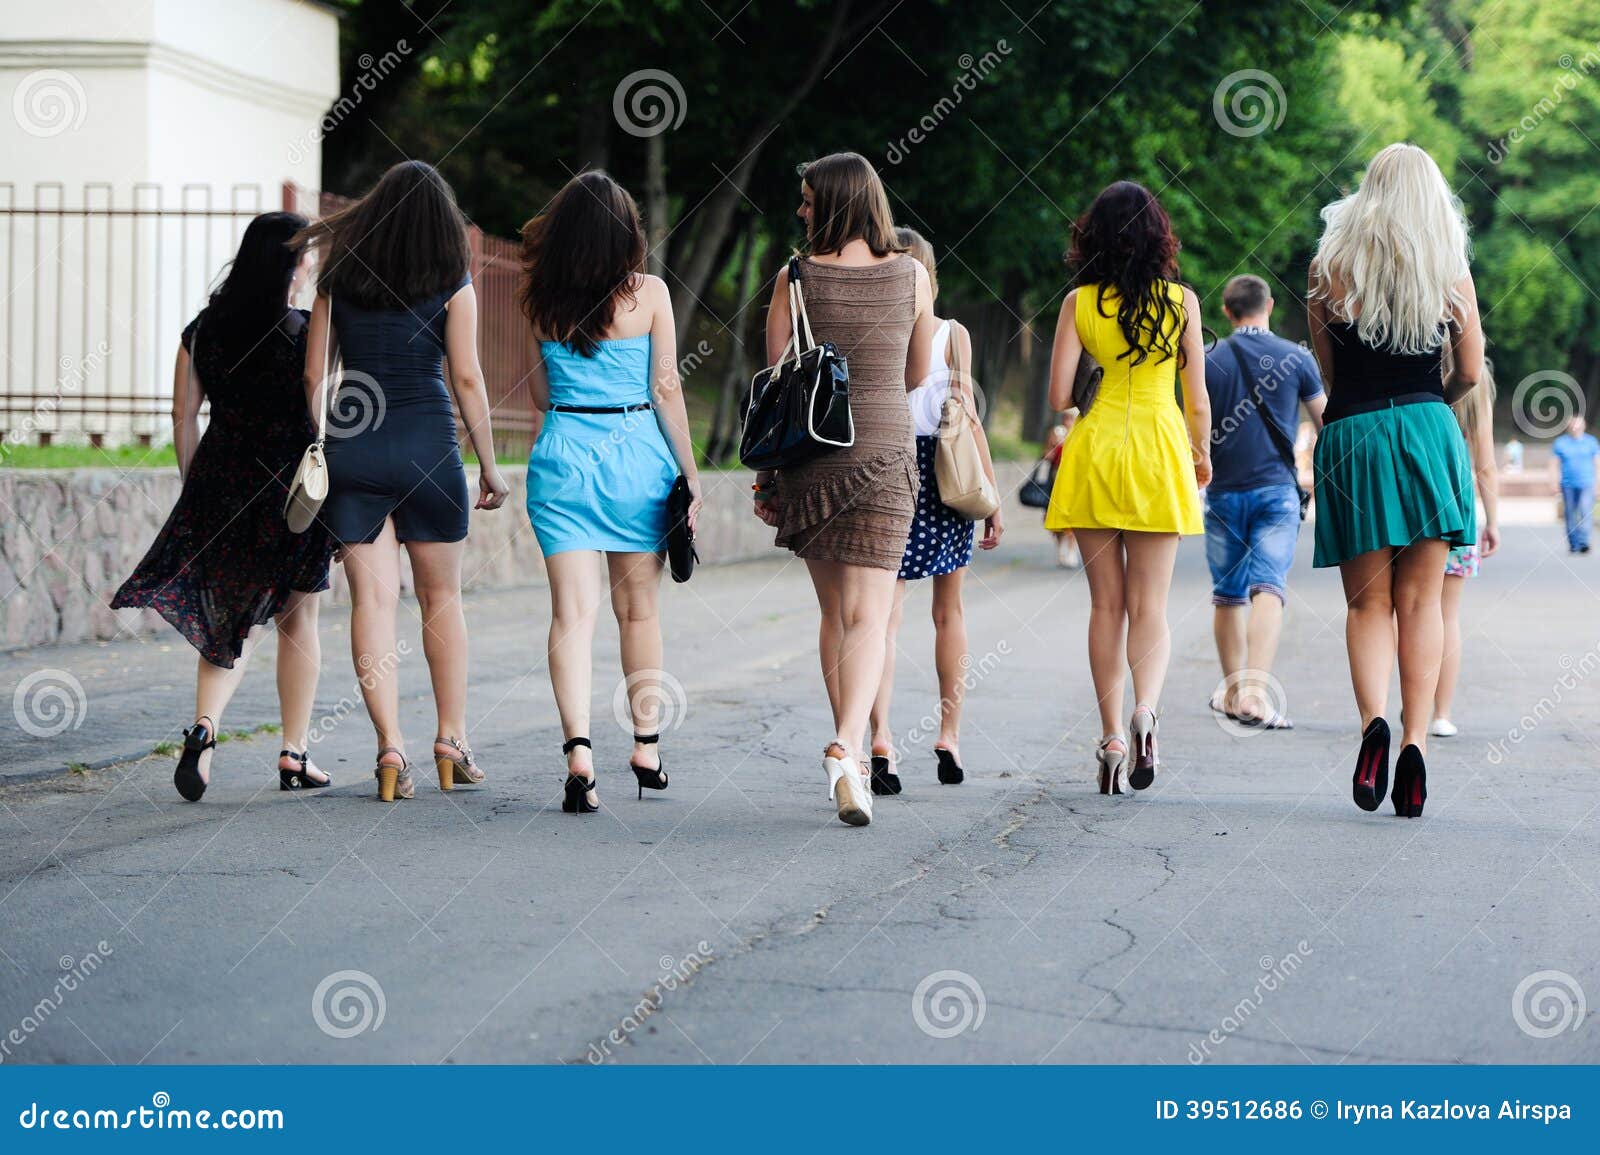 Где девочки гуляют. Девушка гуляет. Женщины гуляют на улице. Девочка гуляет. Девушки на улице в толпе.